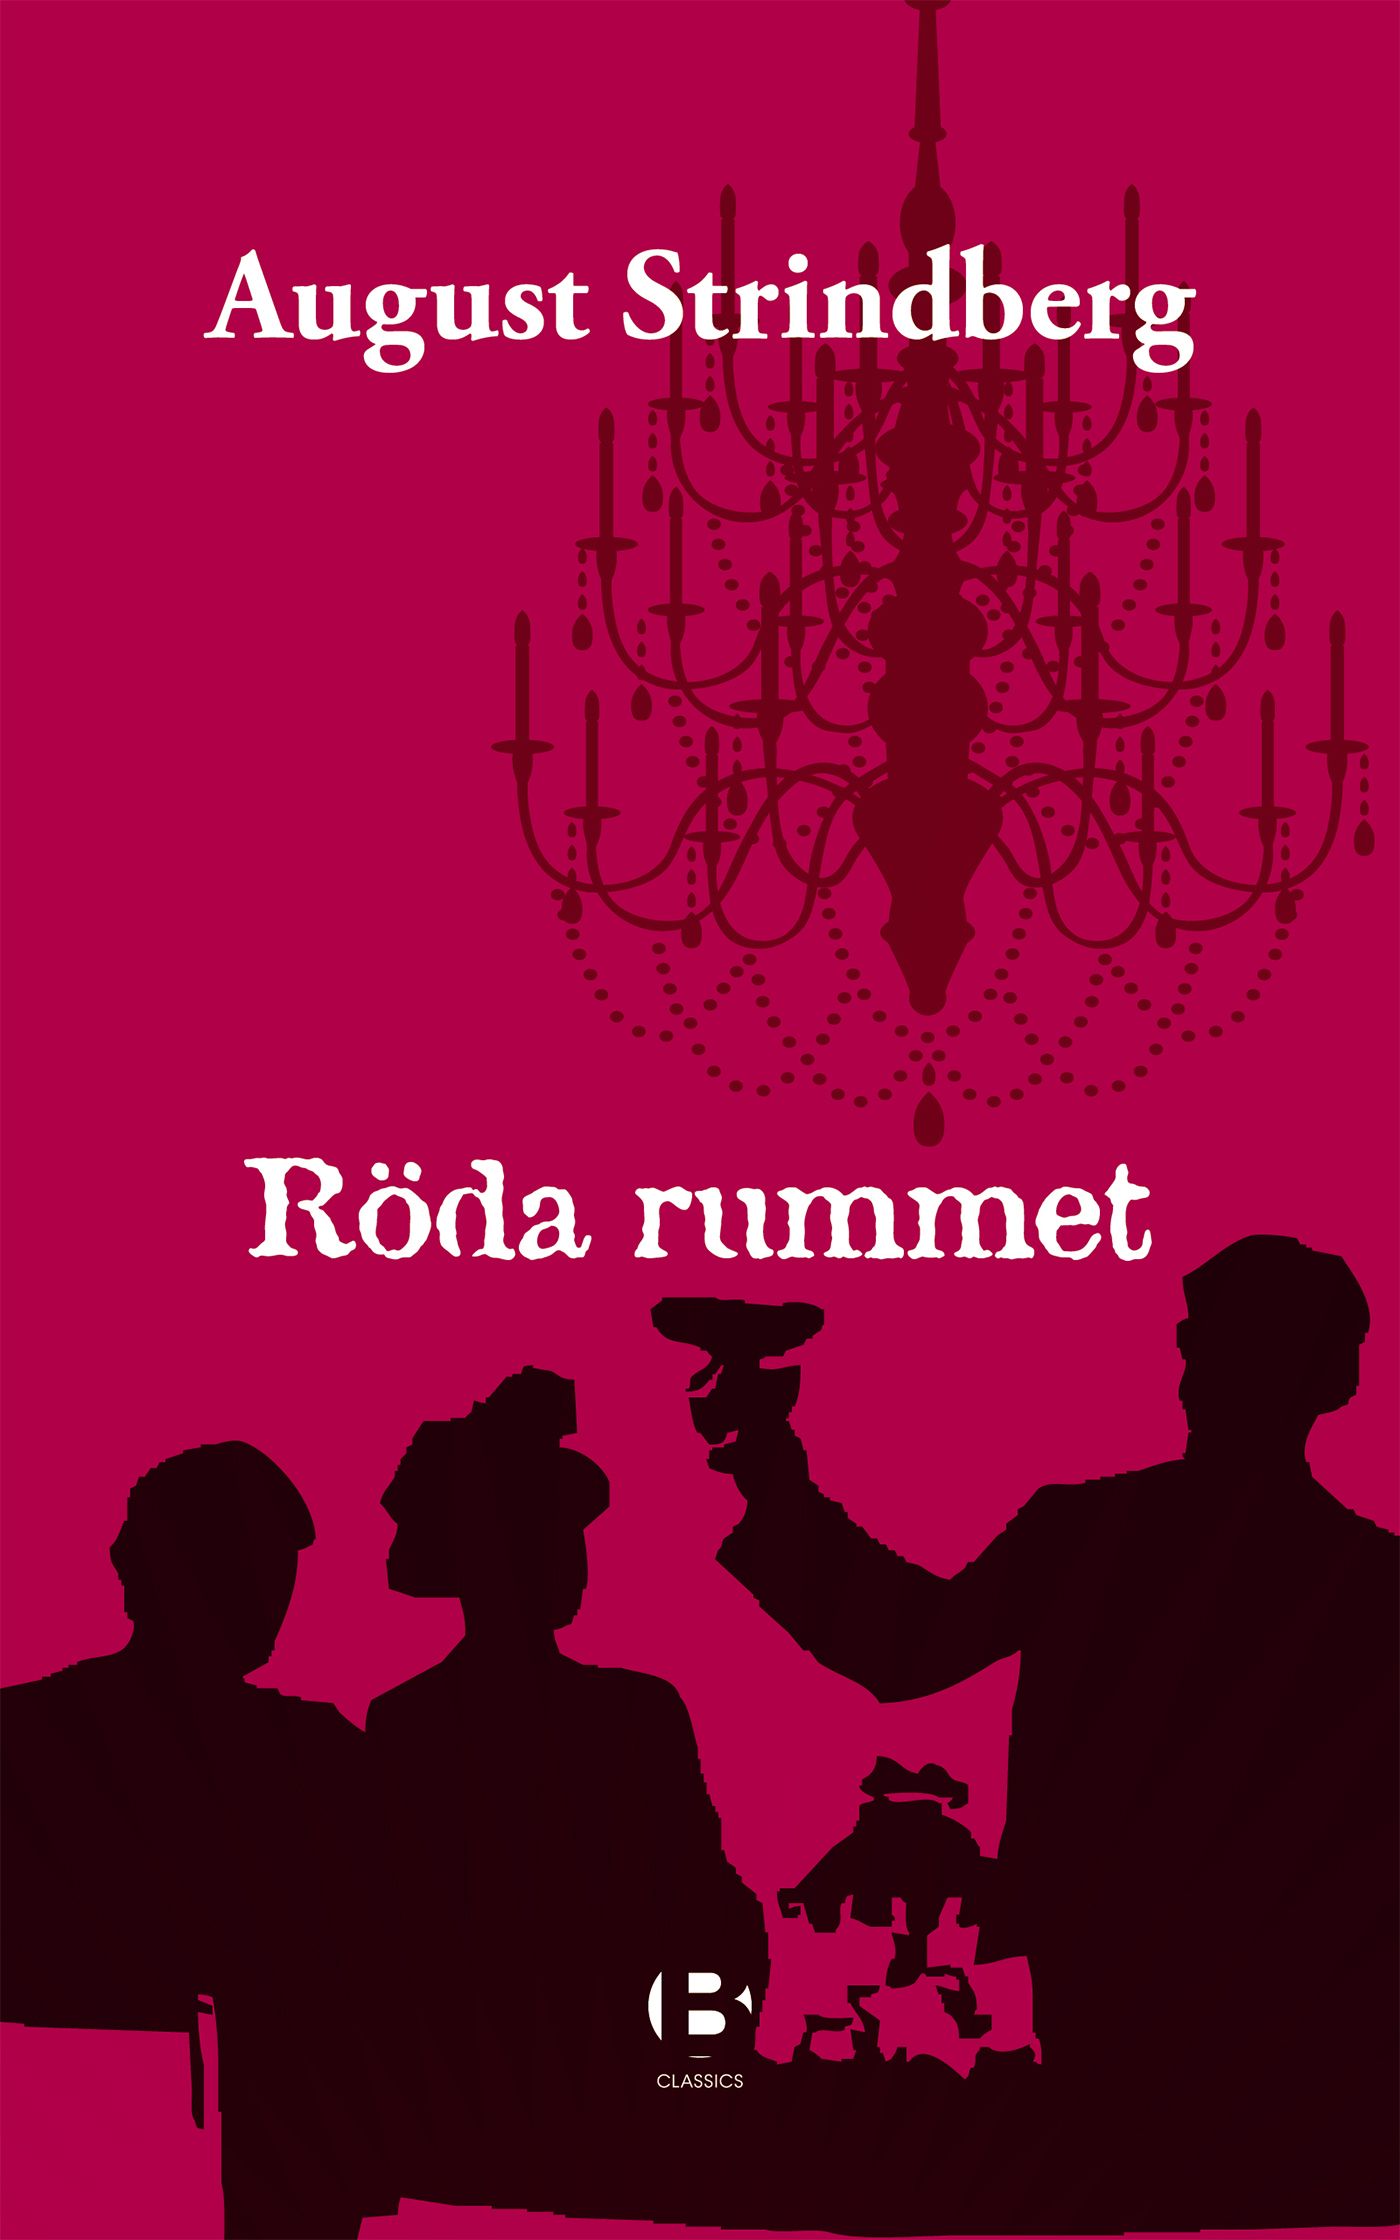 Röda rummet, e-bok av August Strindberg